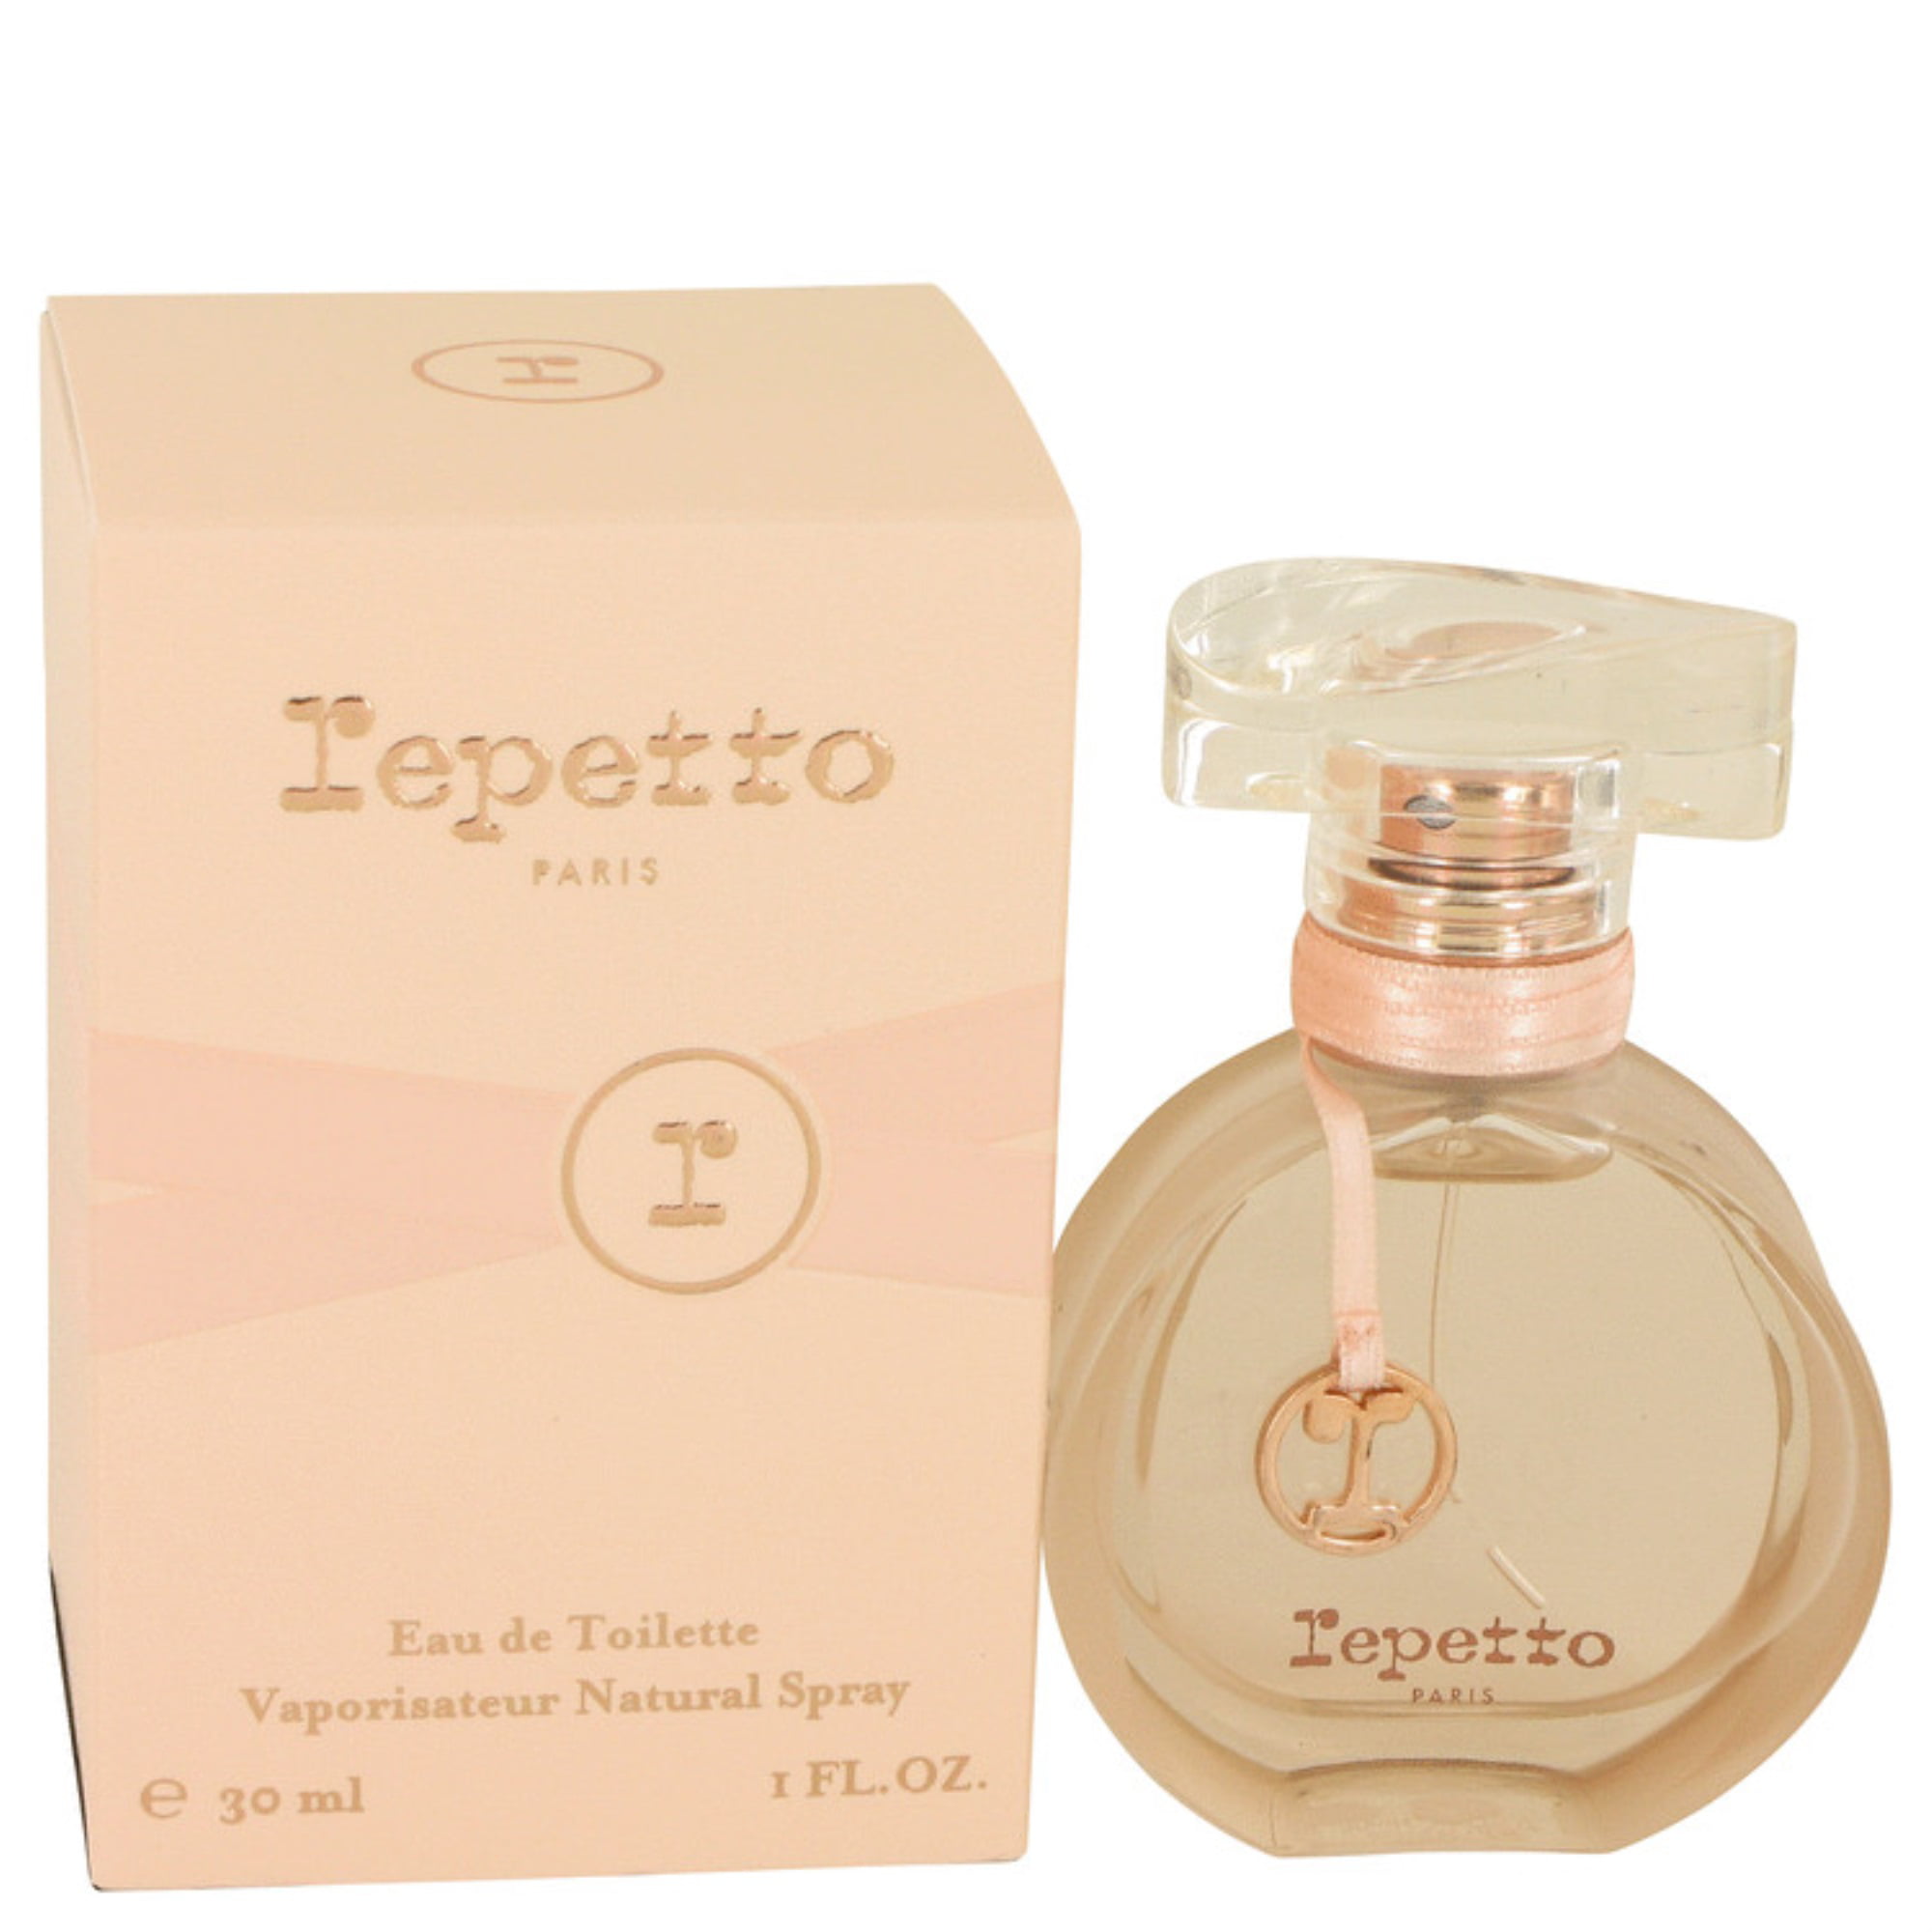 Repetto Perfume by Repetto, 1 oz Eau DE Toilette Spray